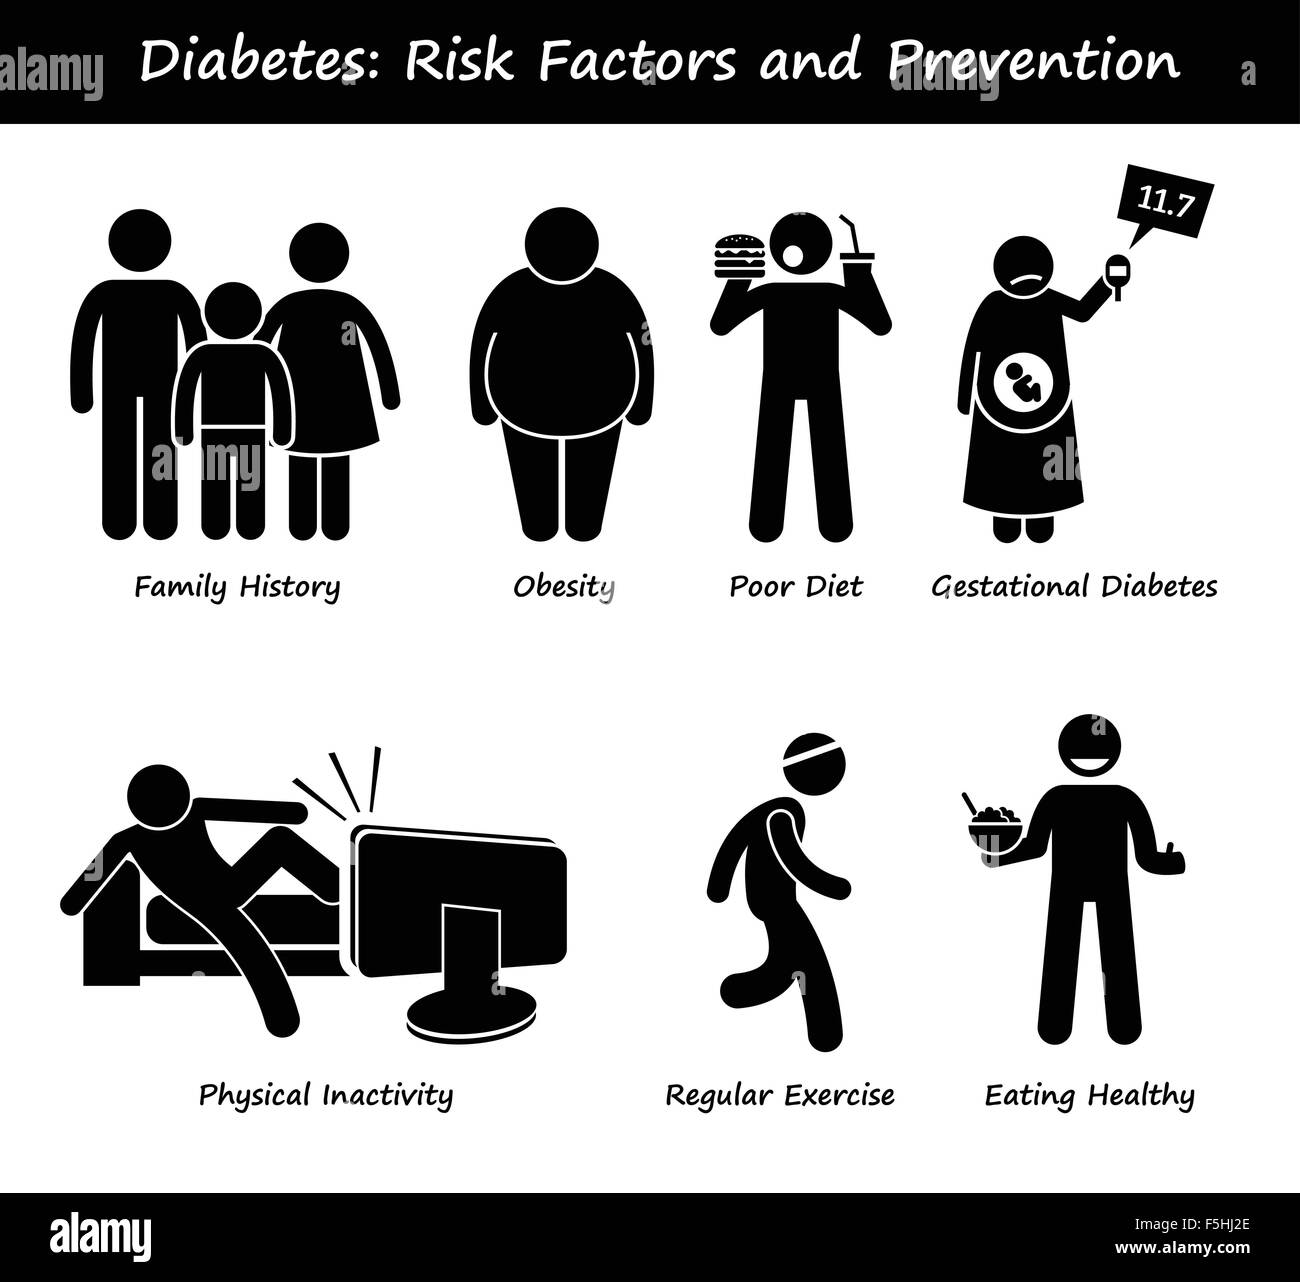 Diabetes Mellitus Diabetes hoher Blutzucker Risikofaktoren und Prävention Strichmännchen Piktogramm Icons Stock Vektor